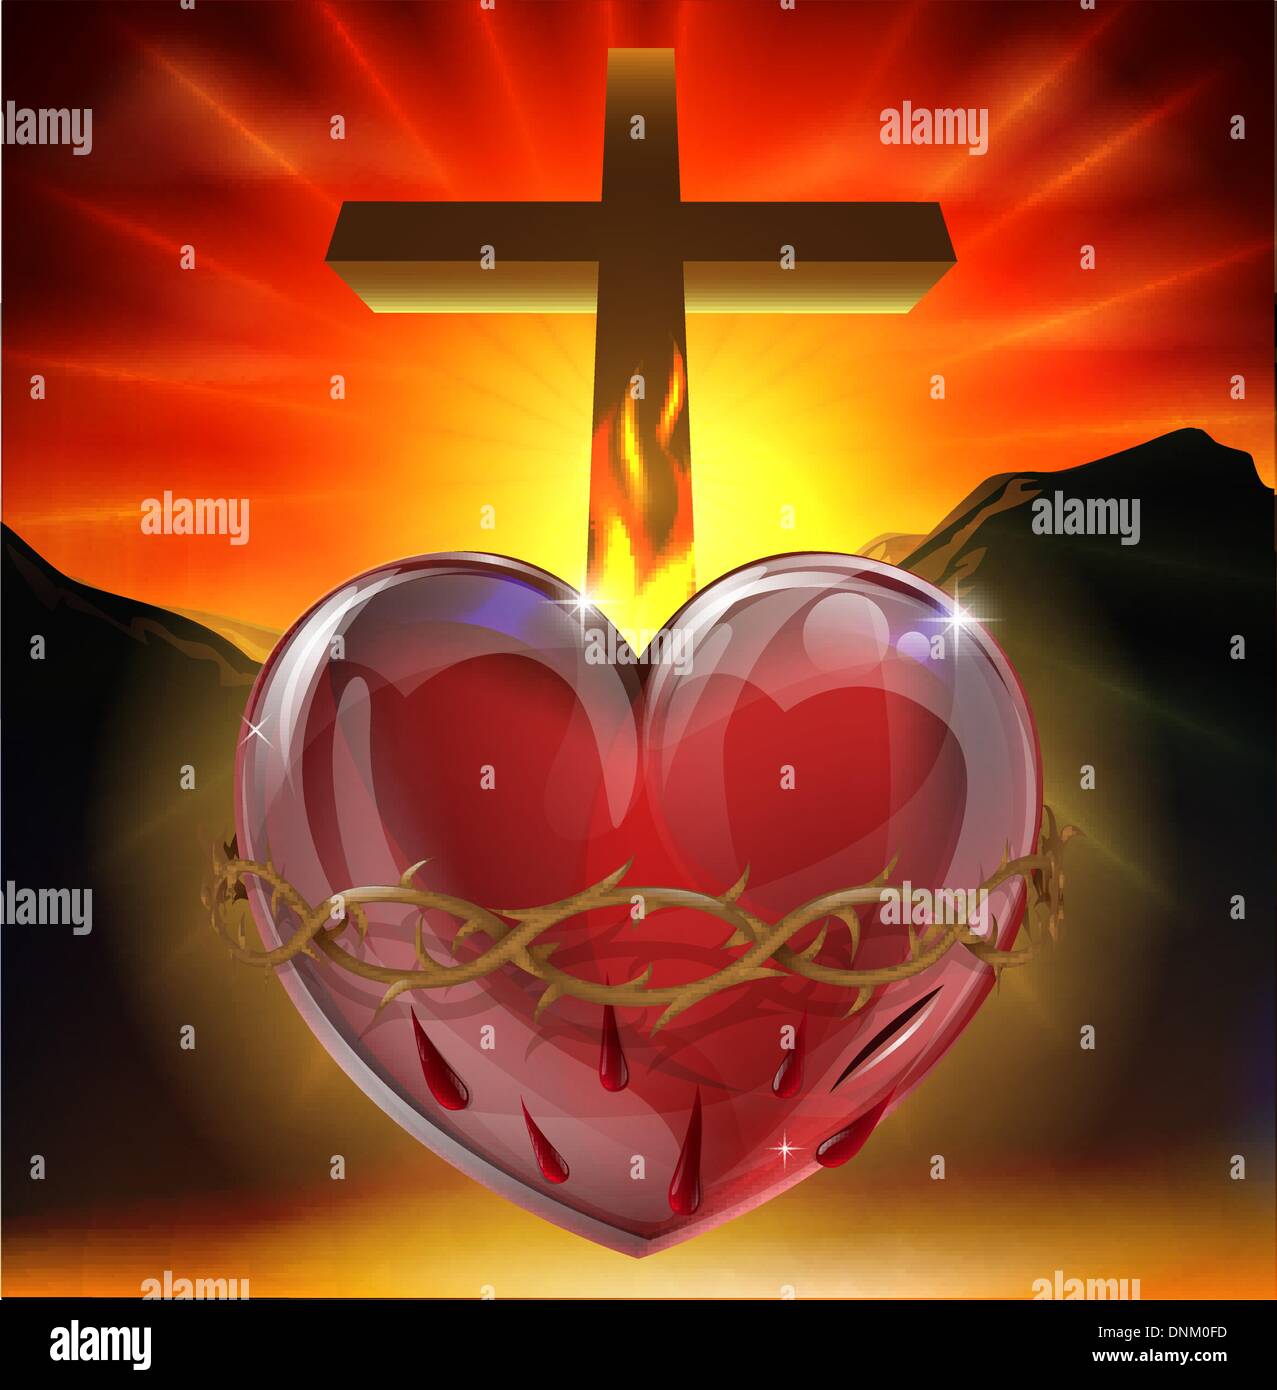 Illustrazione del simbolo cristiano del sacro cuore. Un cuore splendente di luce divina con la corona di spine, lancia una ferita Illustrazione Vettoriale